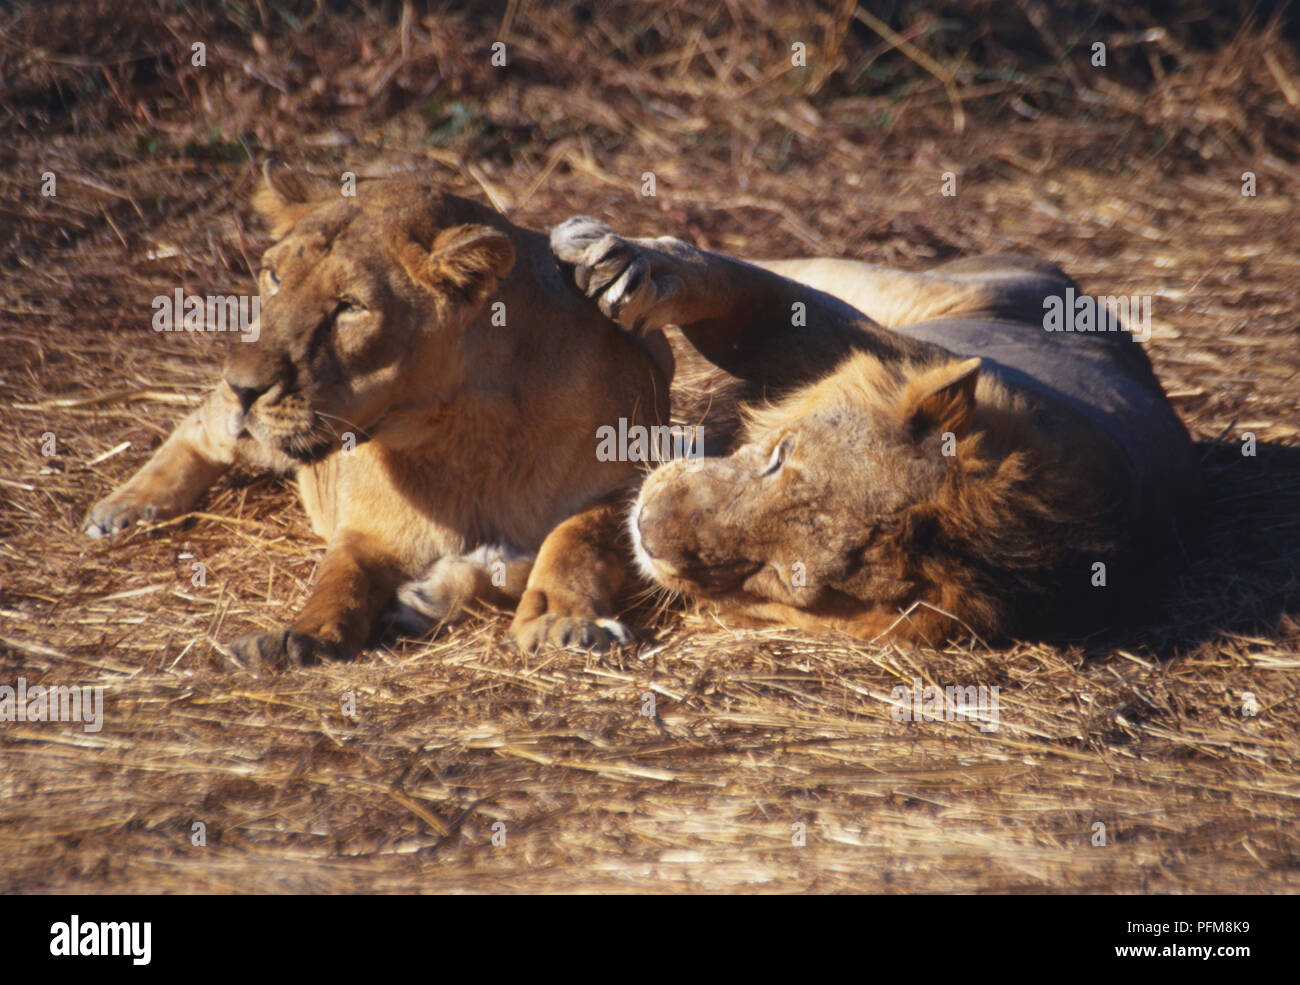 Lion et lionne d'Asie (Panthera leo persica) ''courting''' tout en étant allongé. Le lion a ses grandes pattes avant sur le cou de la lionne. Photographié dans le Rif National Park et sanctuaire de Lion, l'Inde, le seul endroit pour voir les lions d'Asie à l'état sauvage. Banque D'Images